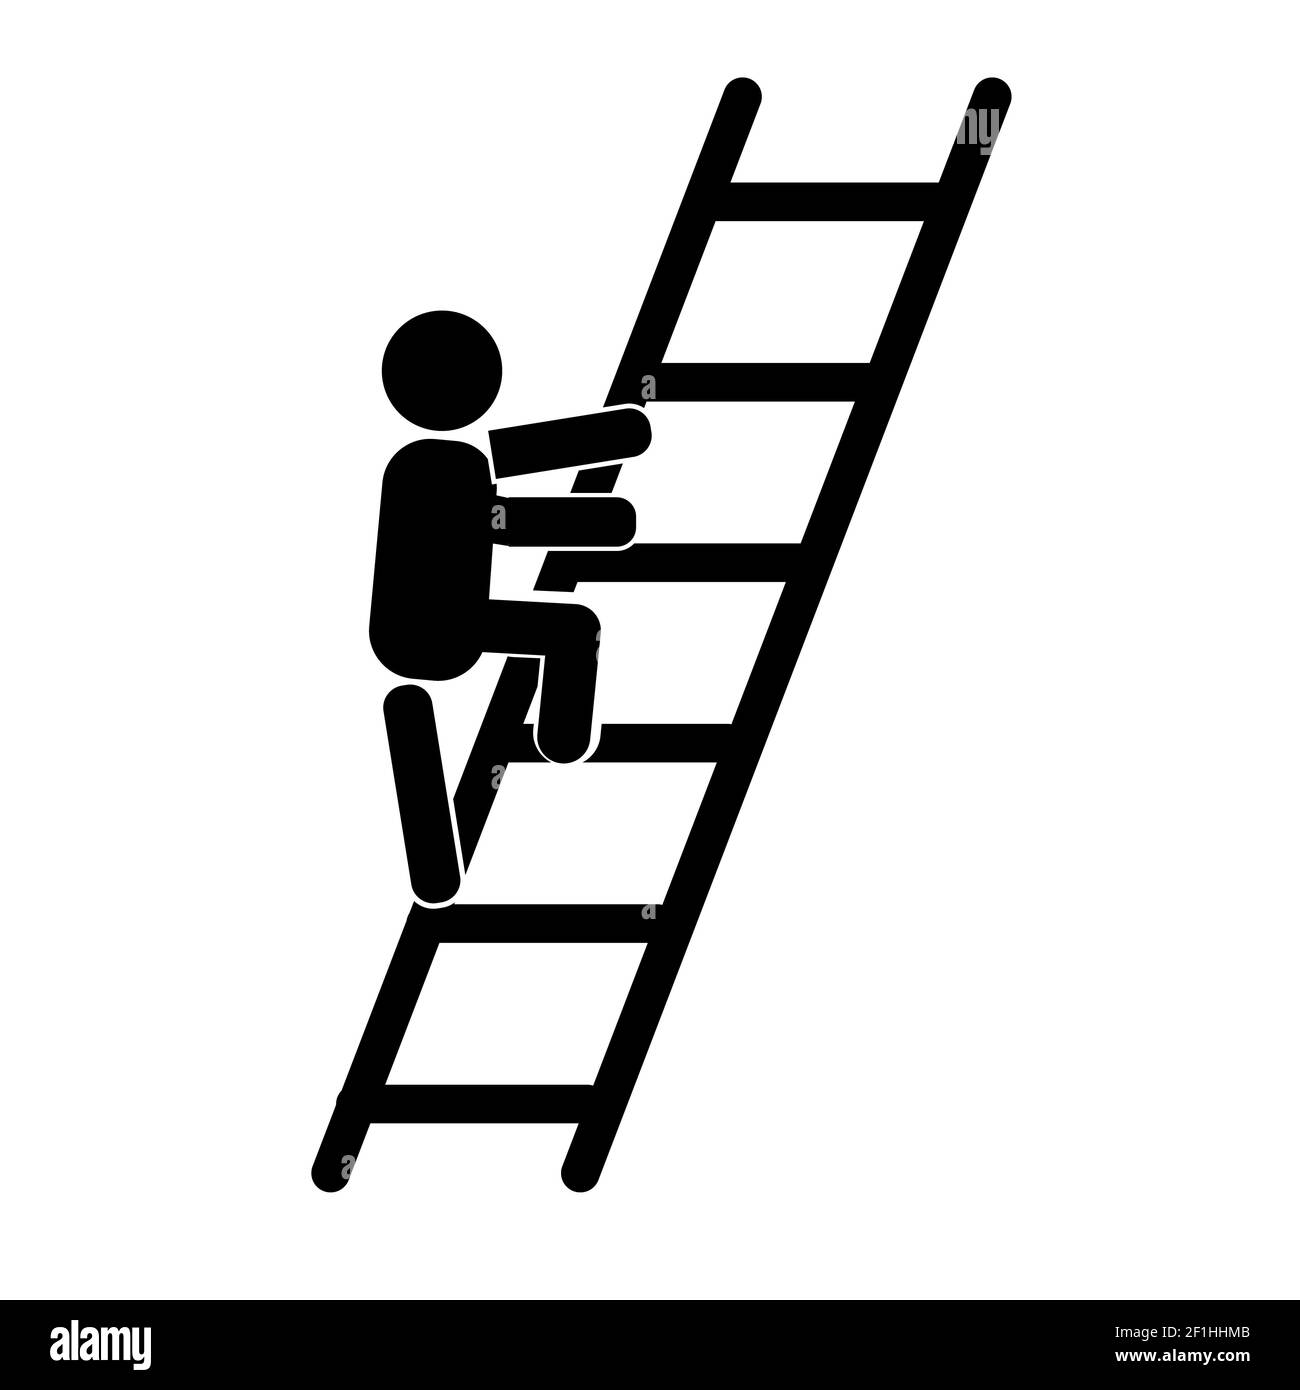 Person klettert eine Leiter Symbol auf weißem Hintergrund. Leiter Symbol.  Mann klettert die Treppe Zeichen. Flacher Stil Stockfotografie - Alamy